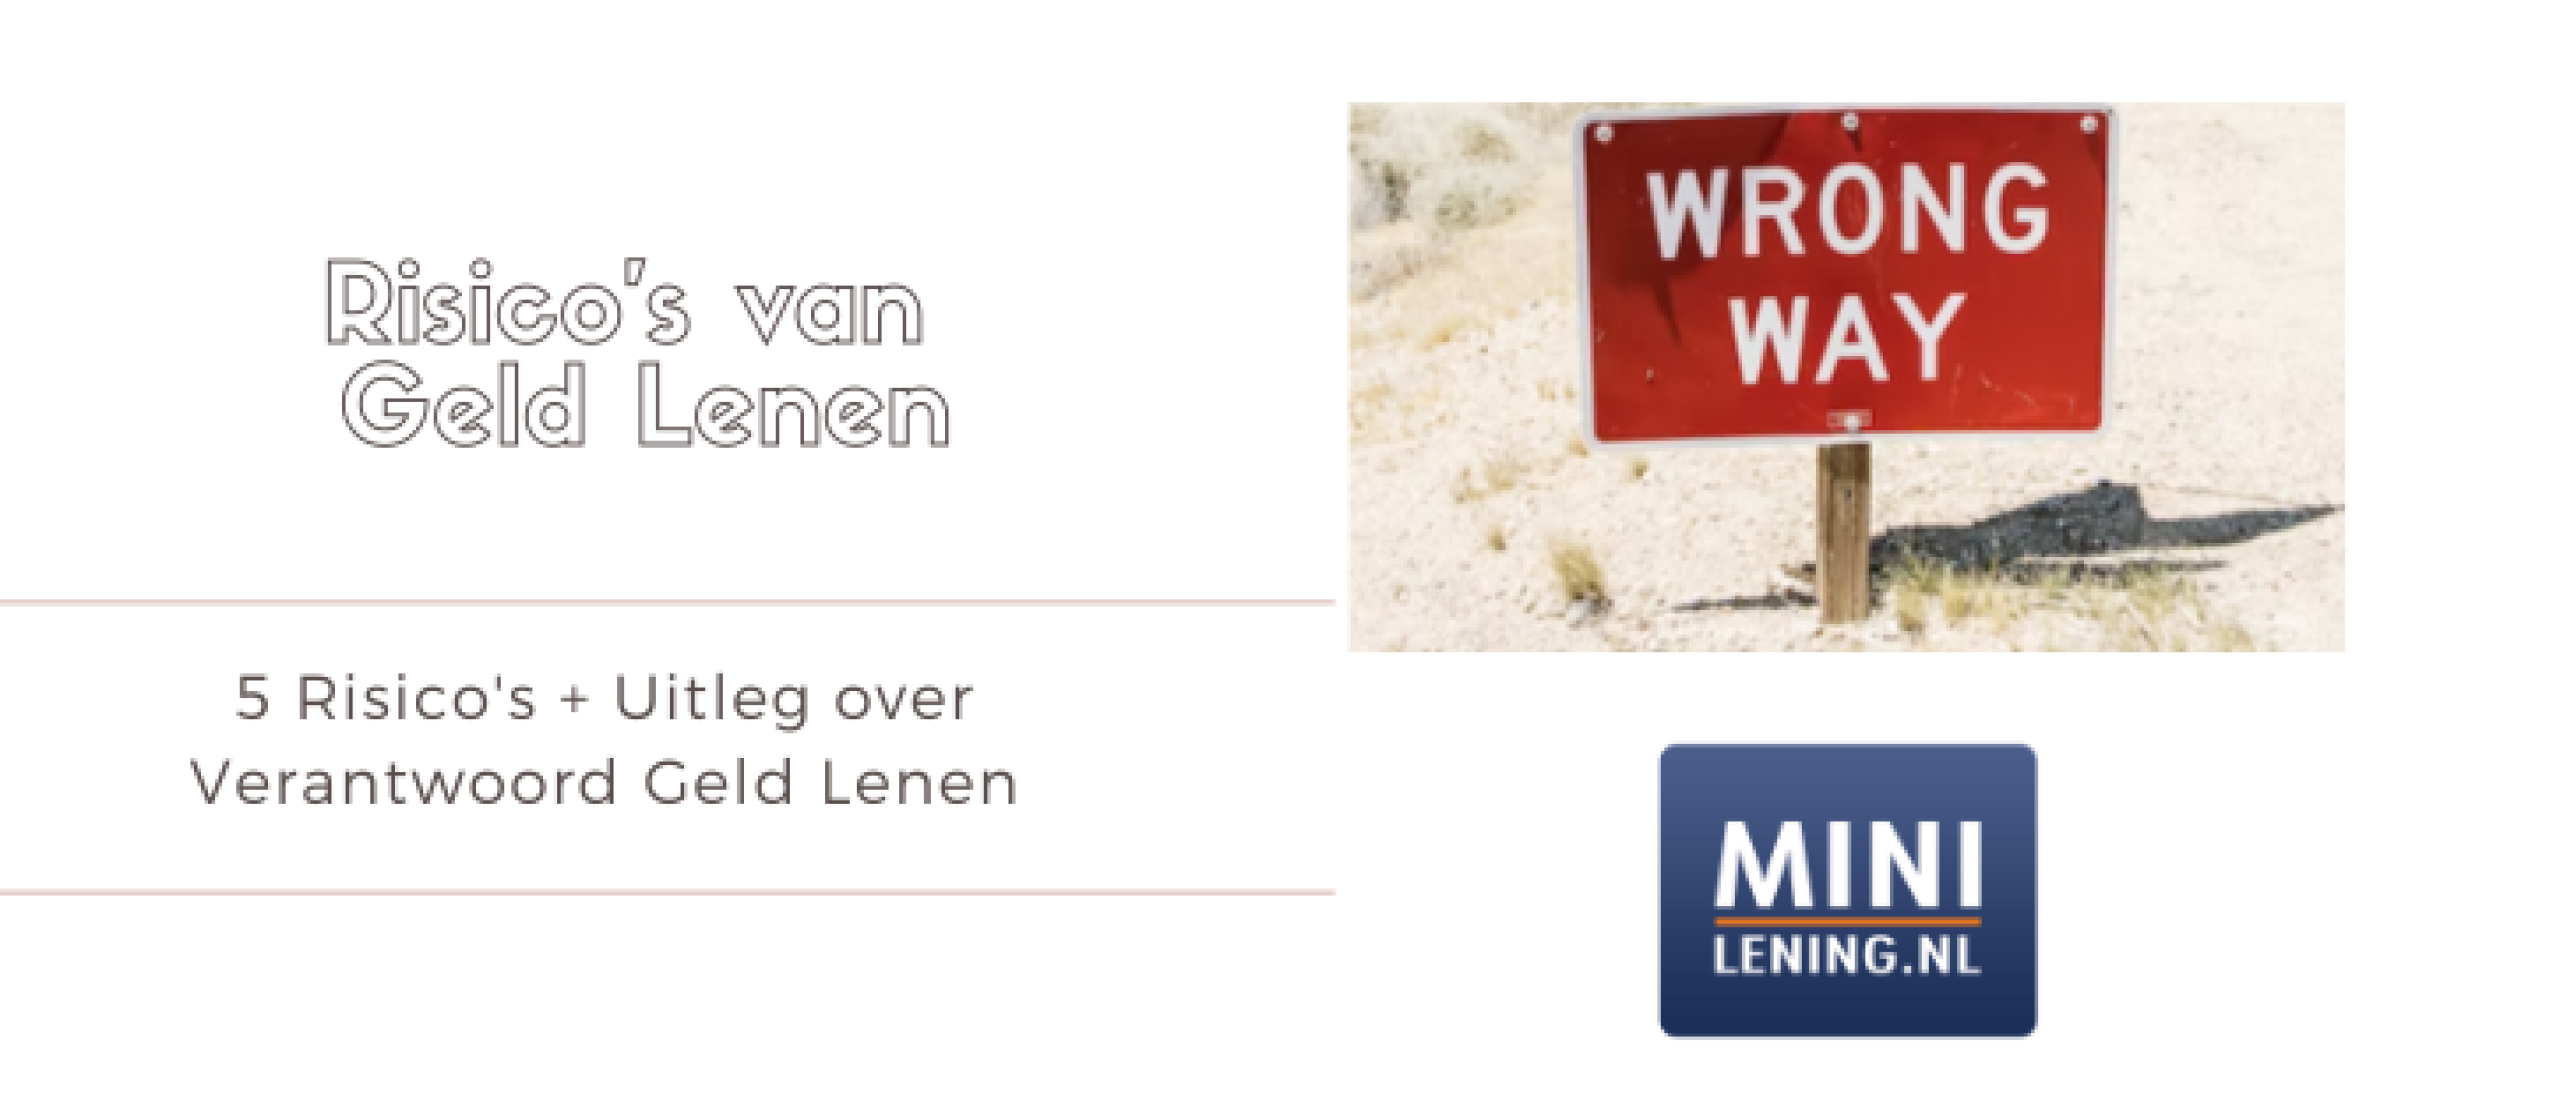 5x Risico’s Geld Lenen + Verantwoord Lenen | Minilening.nl